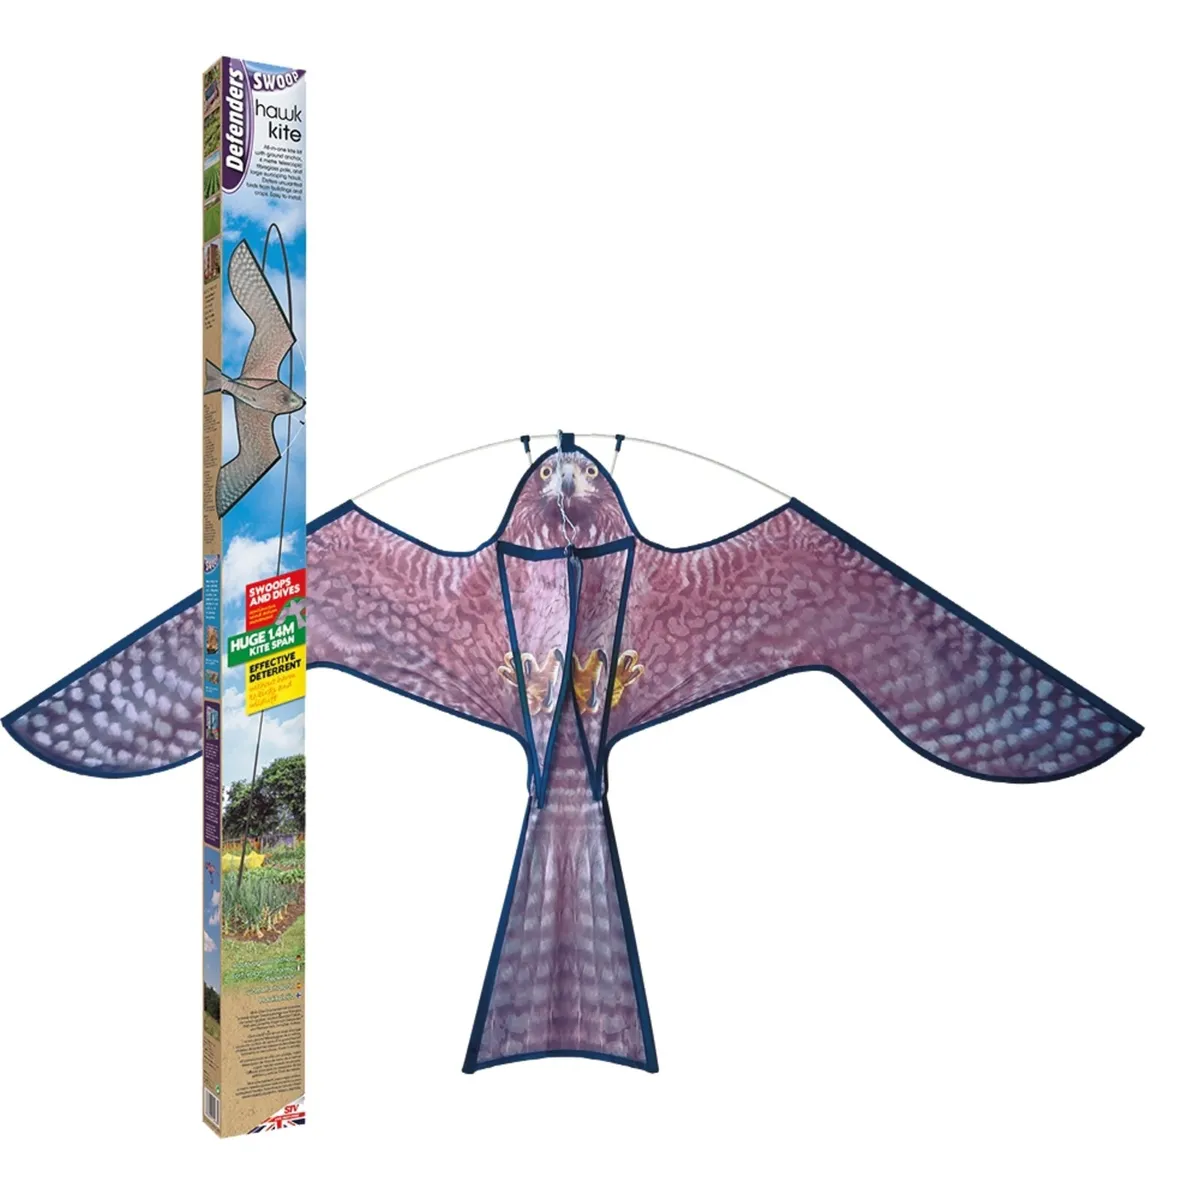 Swoop Hawk Kite Bird Scarer - Image 1